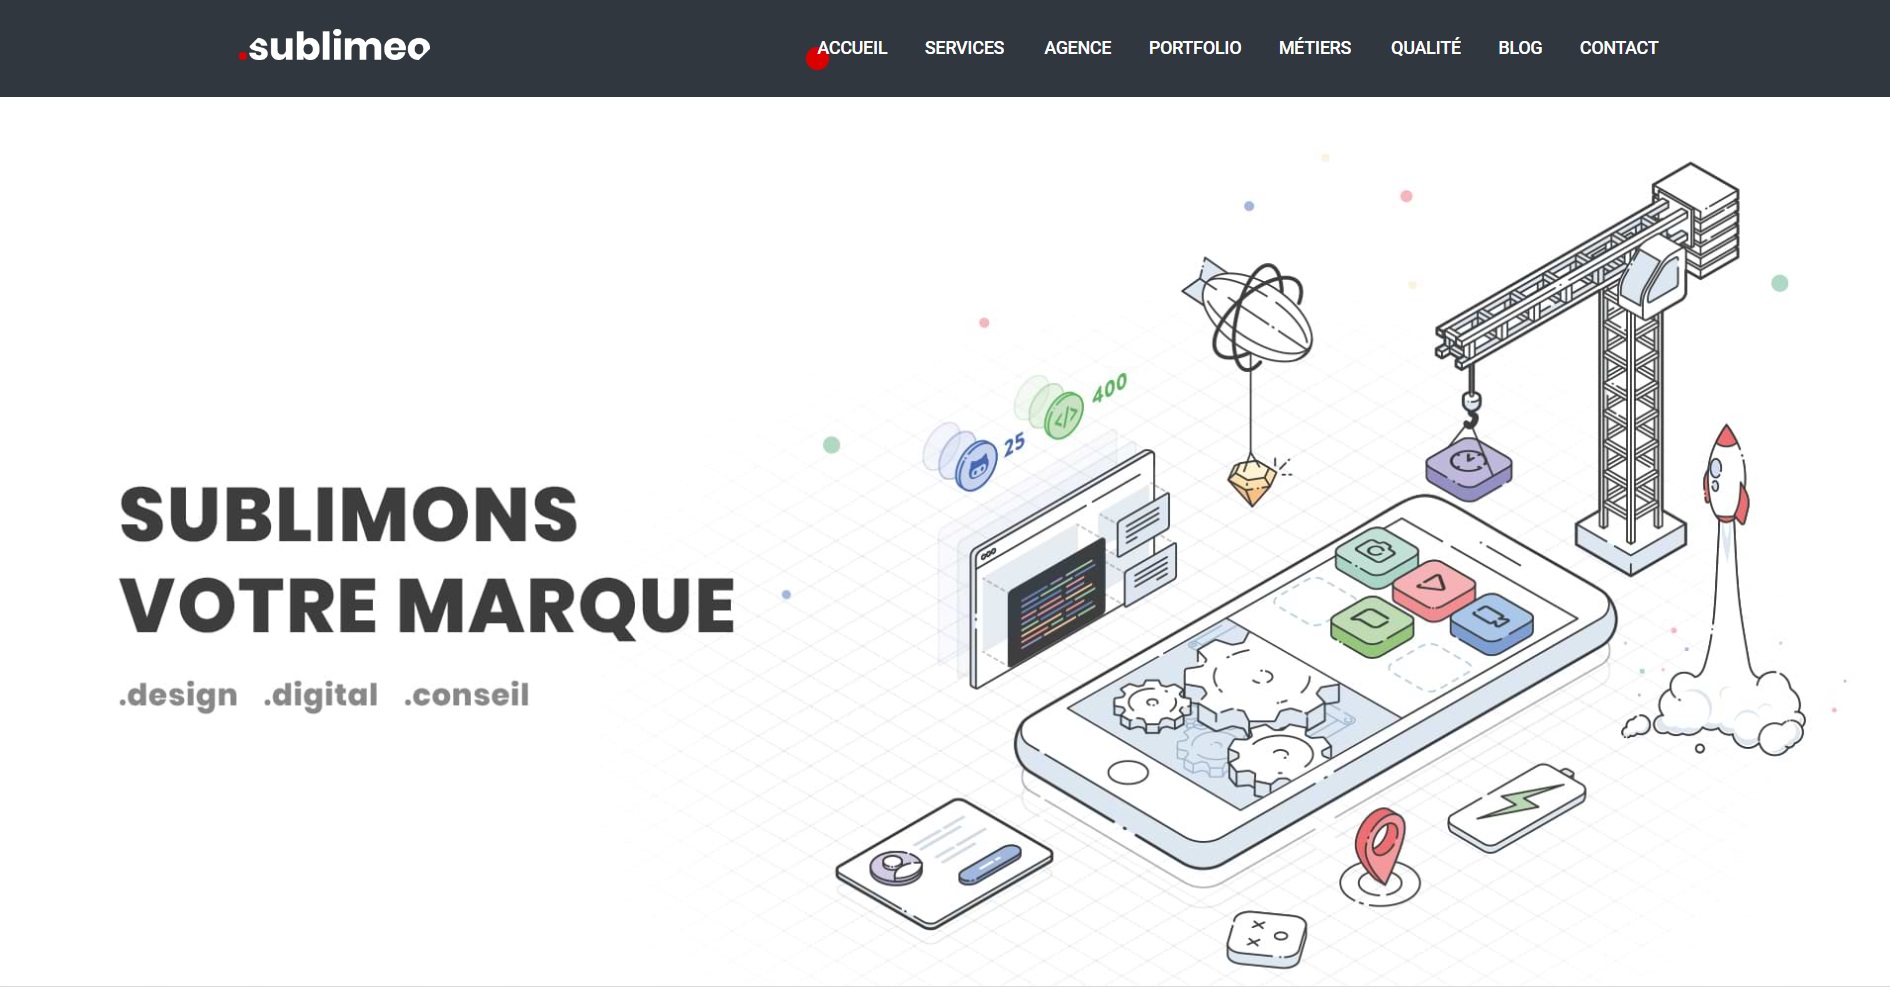  Sublimeo - Agence Web à Toulouse